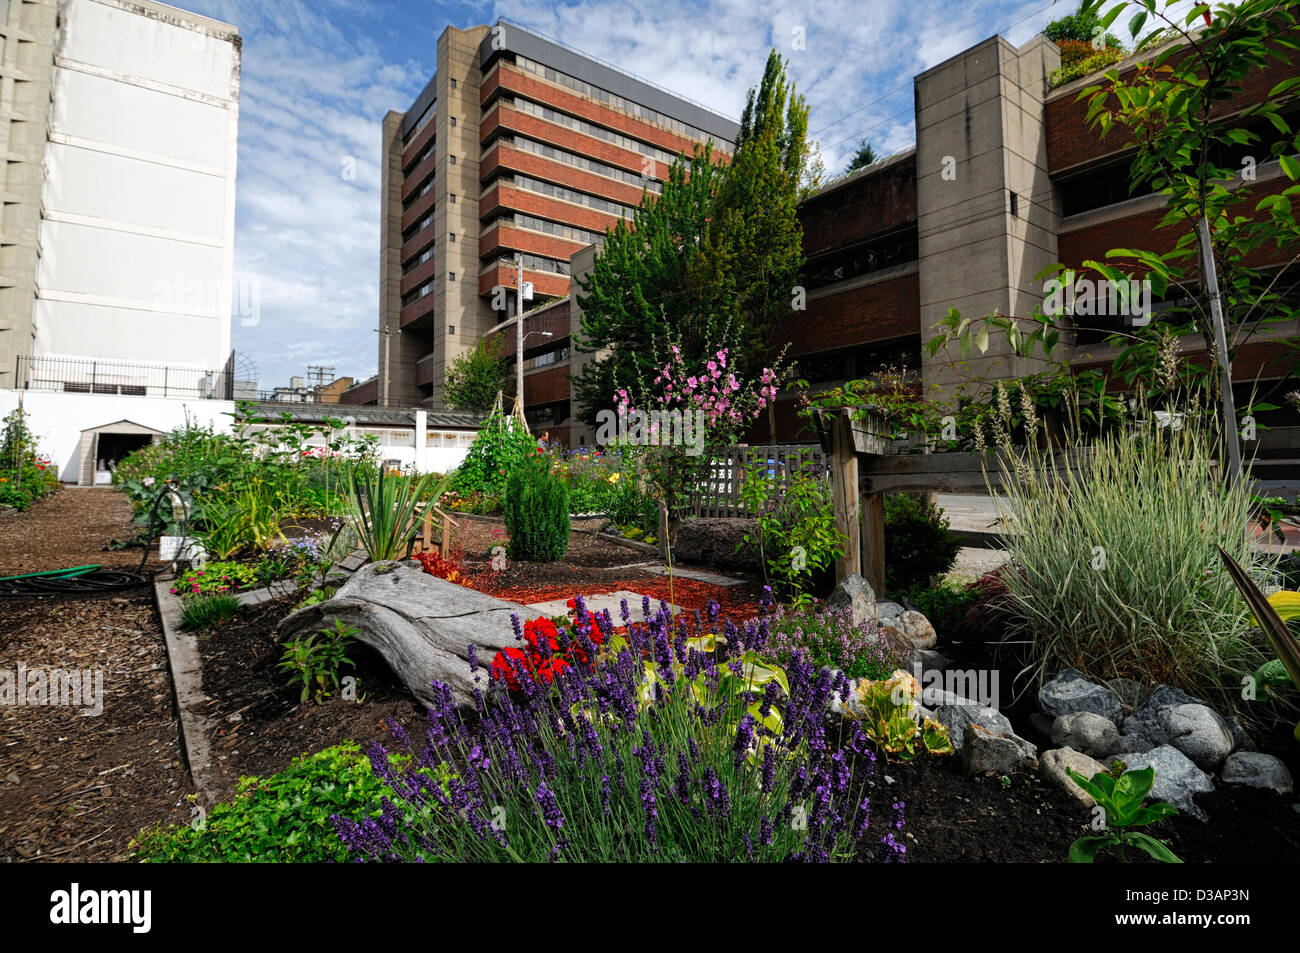 Davie Village Jardín Comunitario Vancouver BC Canadá habilitaciones habilitaciones centro parcela parcelas jardines jardinería Foto de stock